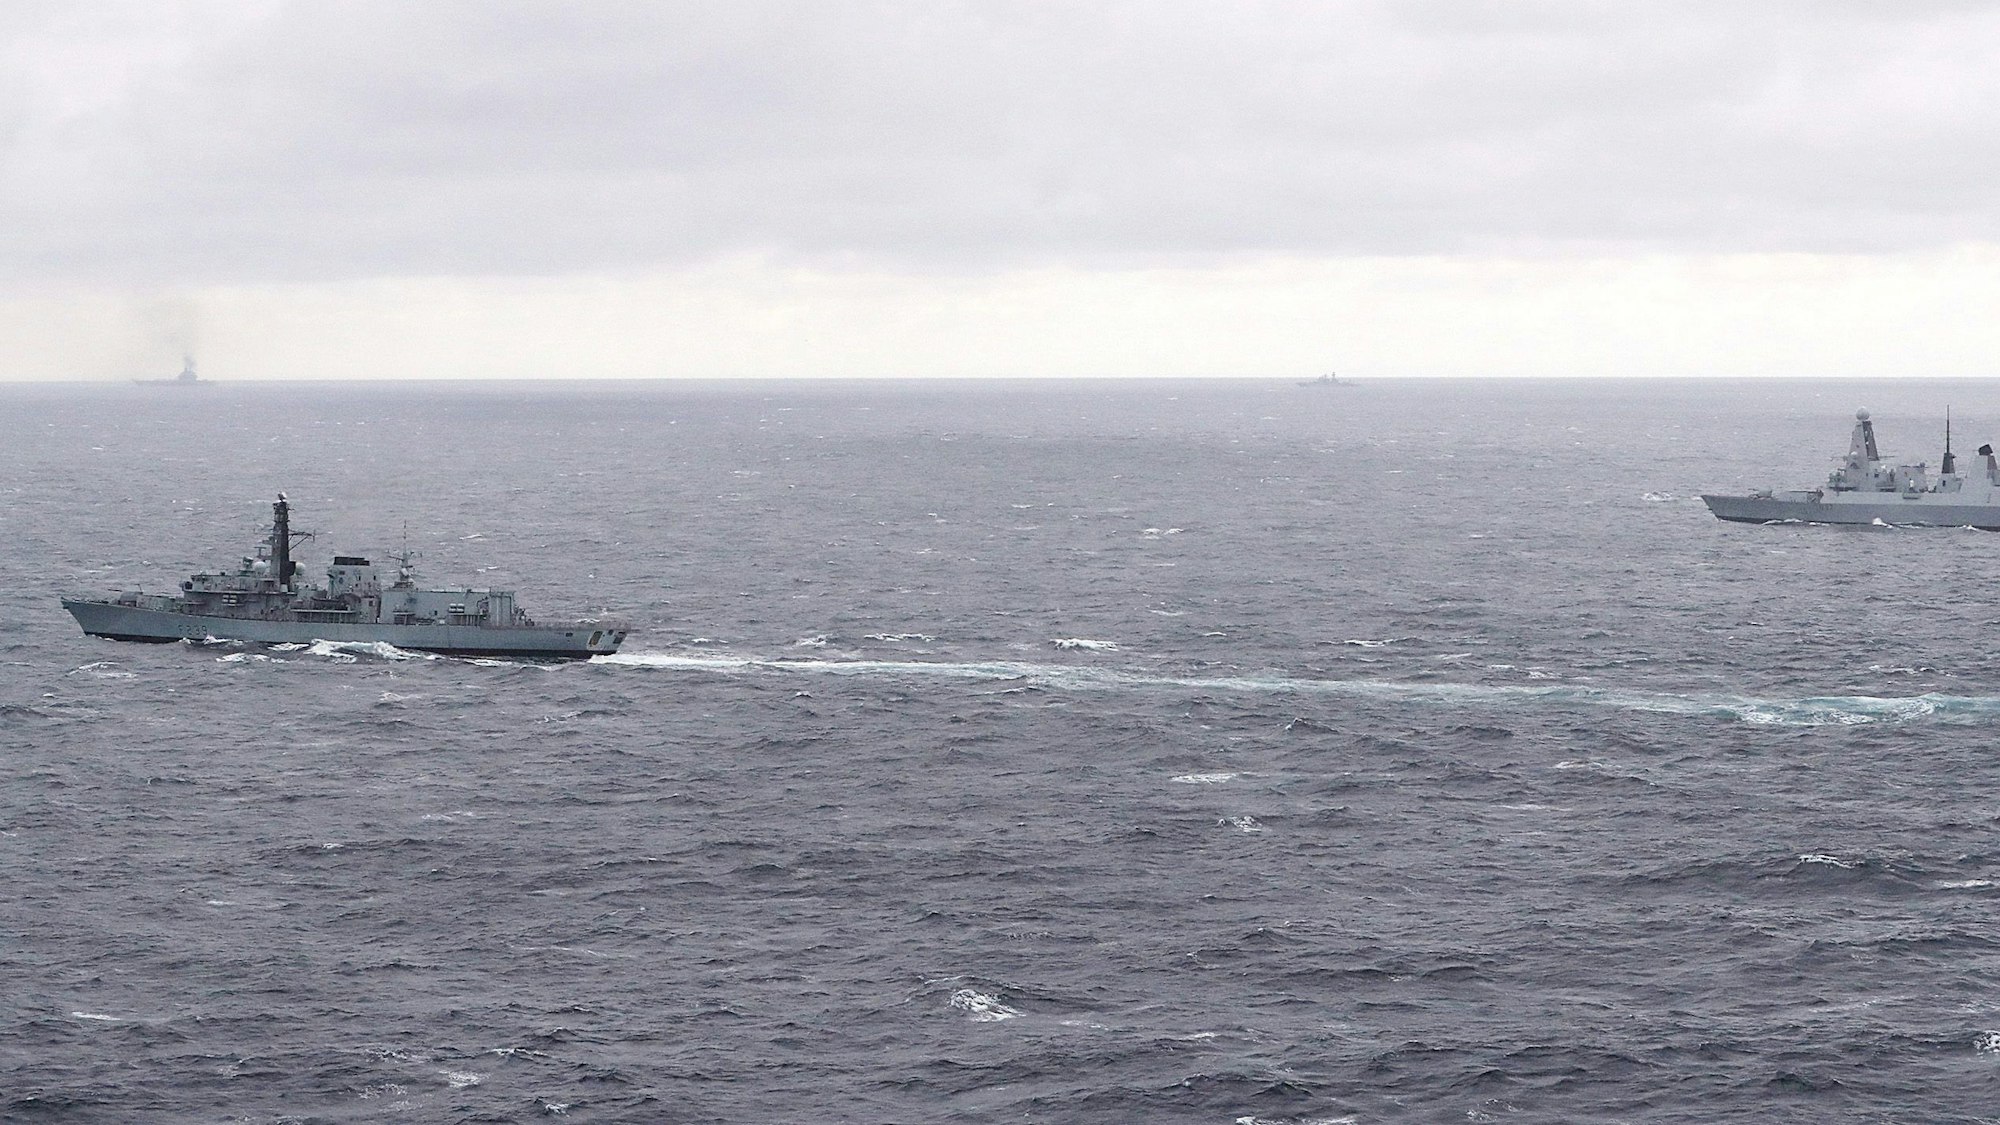 Das Archivfoto, das 2016 vom britischen Verteidigungsministerium zur Verfügung gestellt wurde, zeigt eine britische Fregatte vom Typ 23 (HMS Richmond) zusammen mit einem britischen Zerstörer, im Hintergrund sind mehrere russische Schiffe zu sehen.